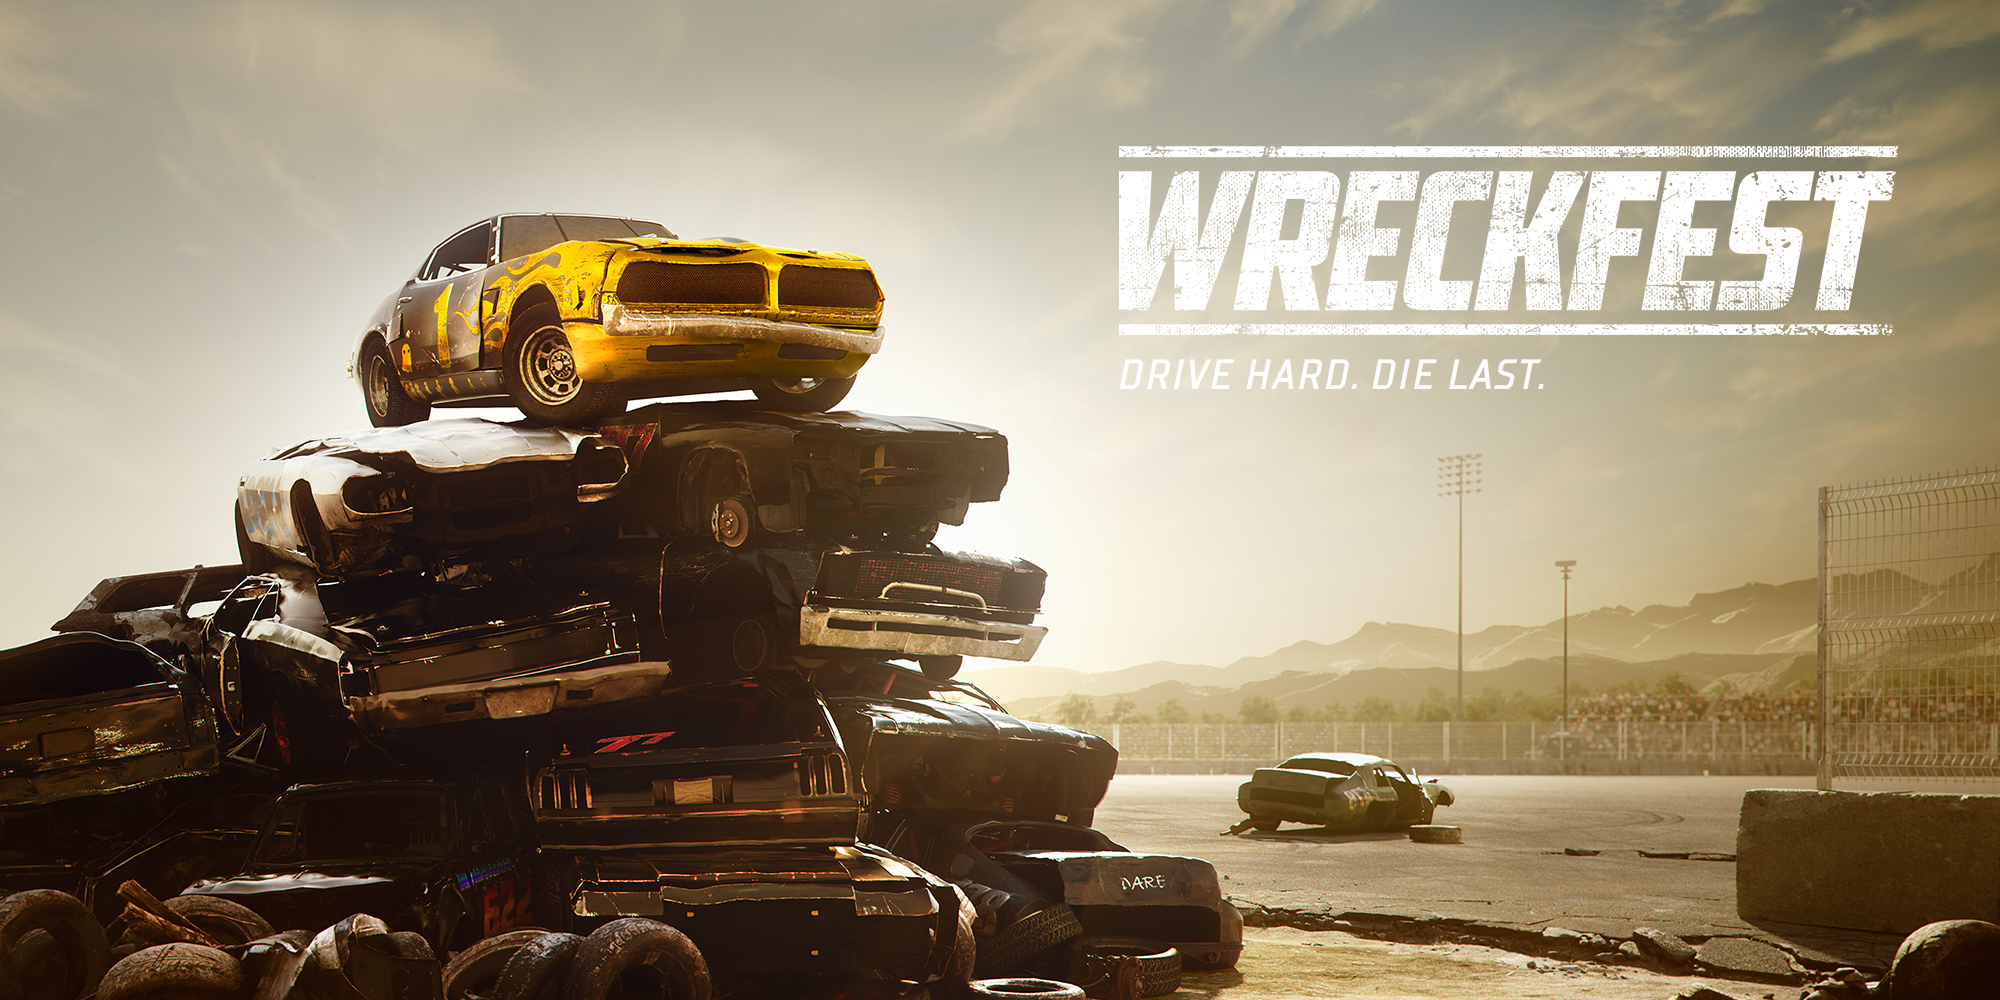 Drive Buy: jogo de combate de carros chega ao Switch em Março